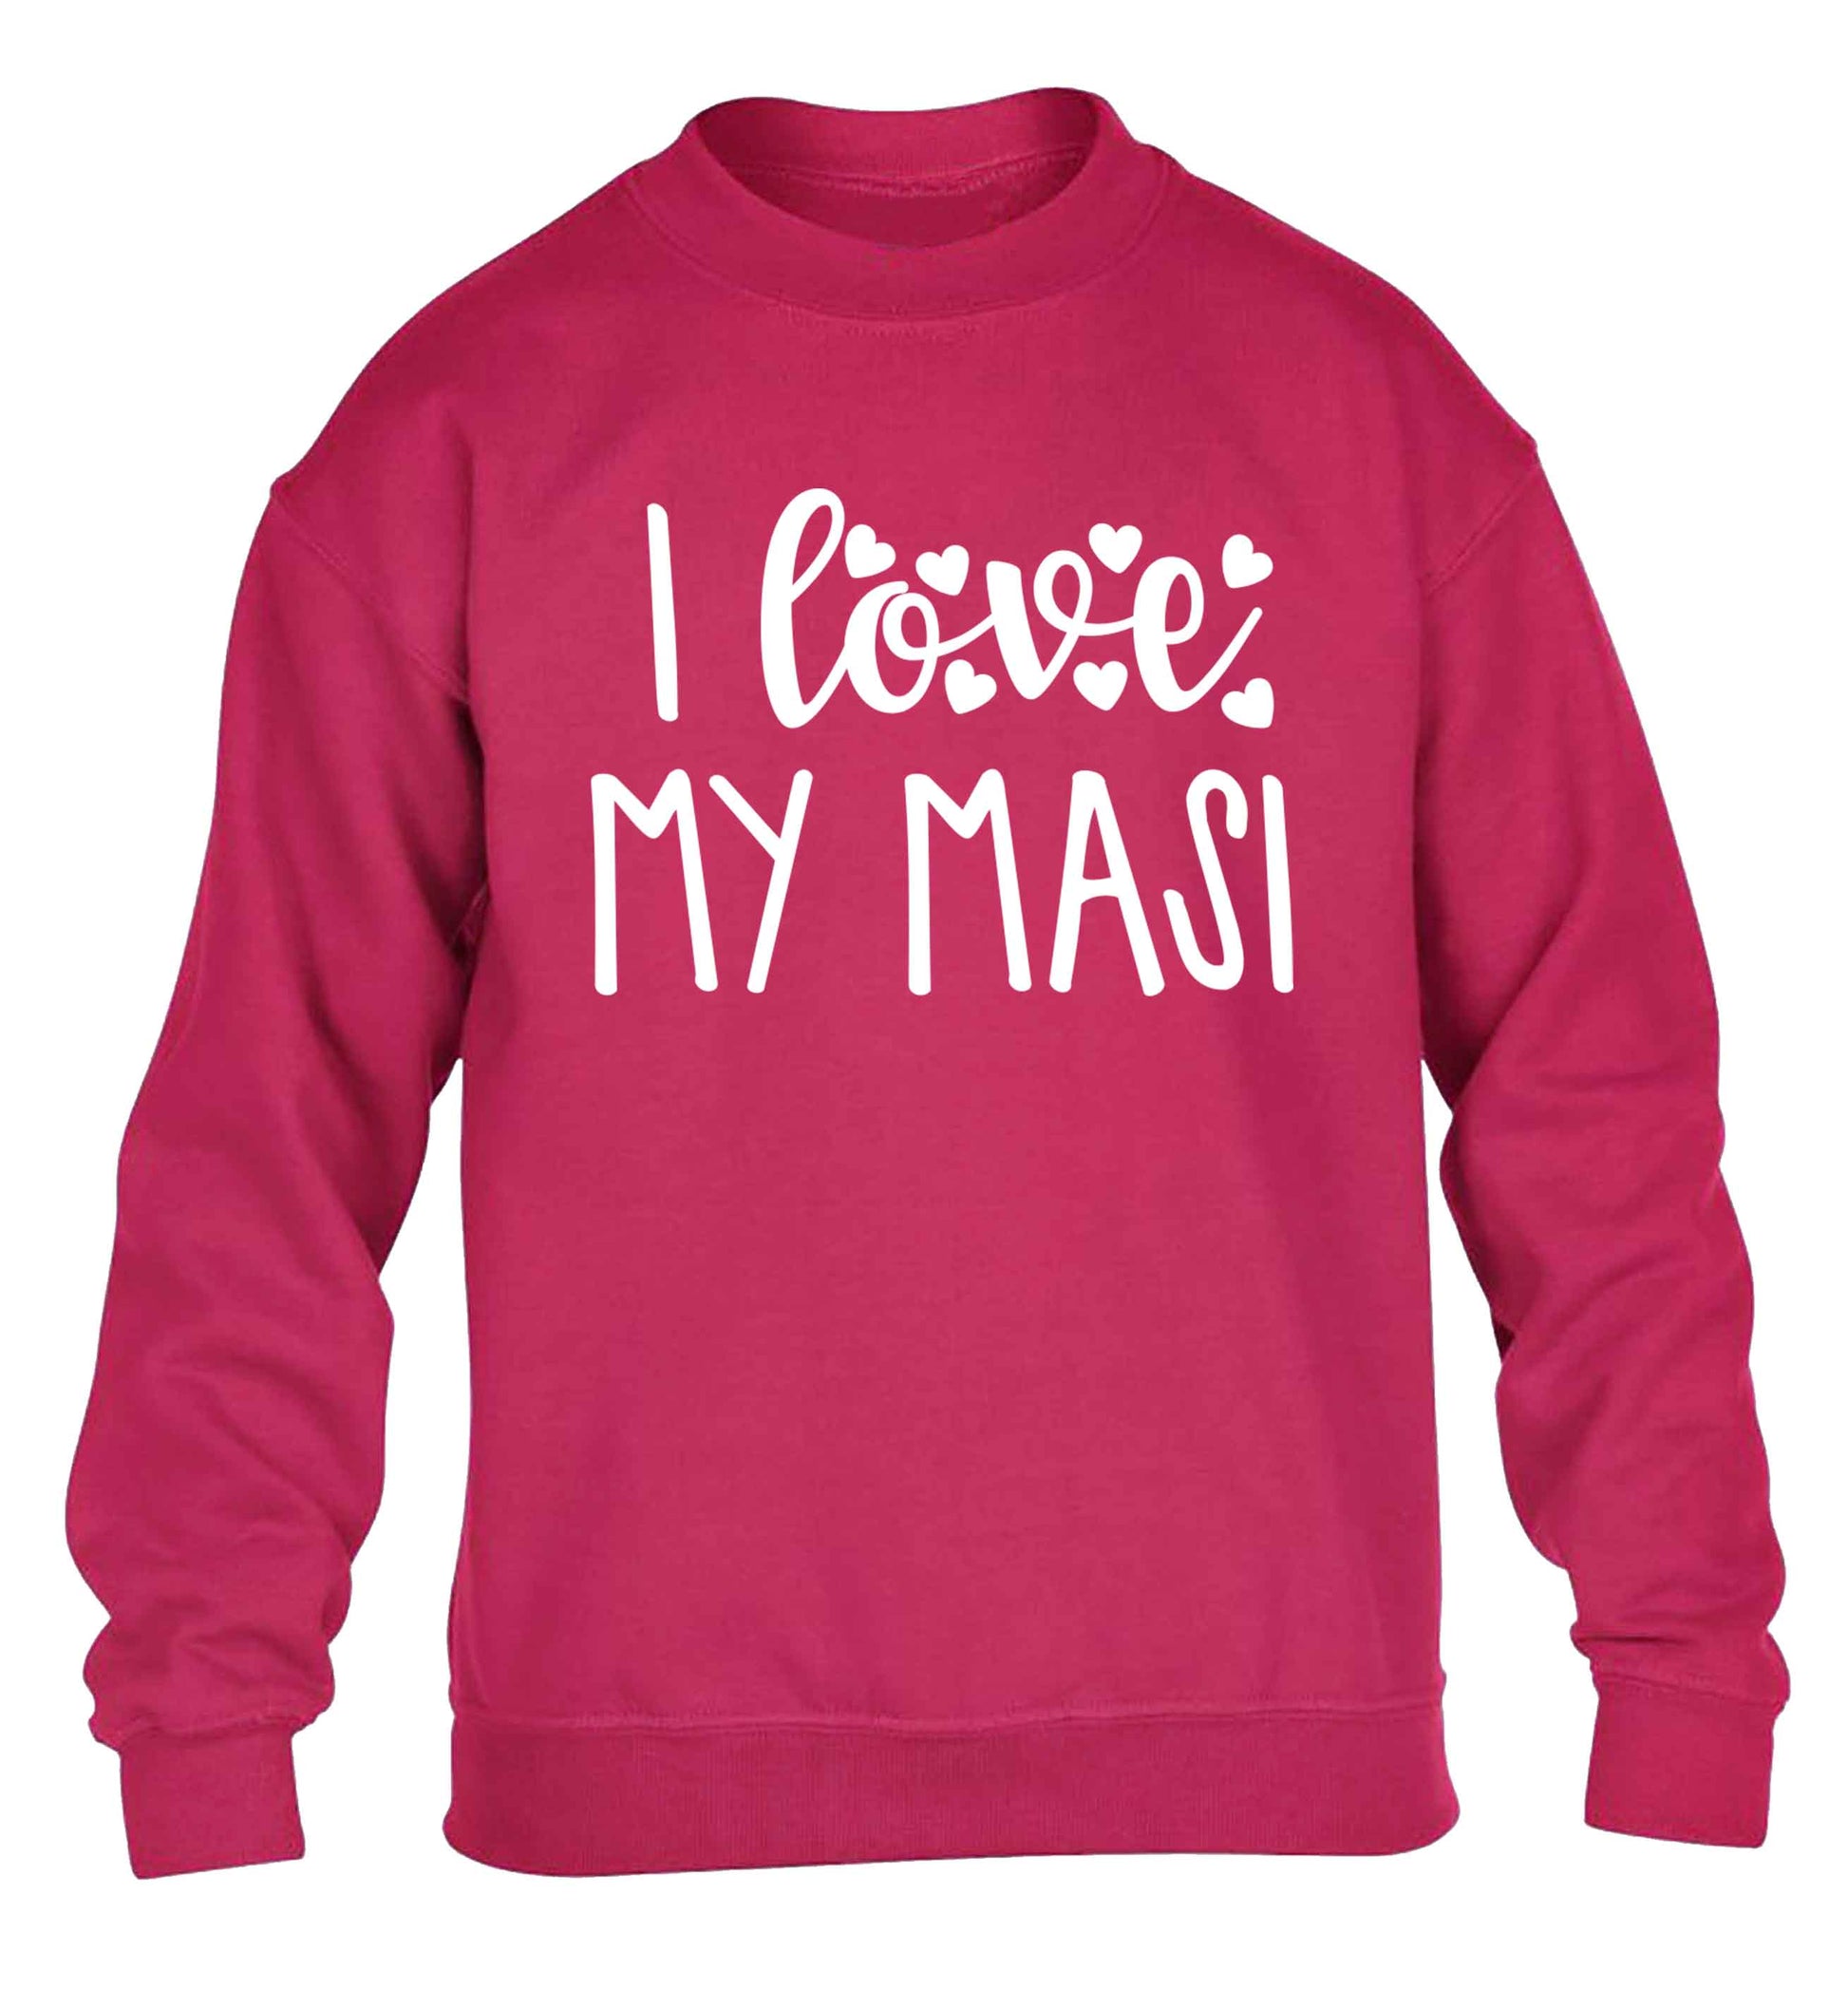 I love my masi children's pink sweater 12-13 Years